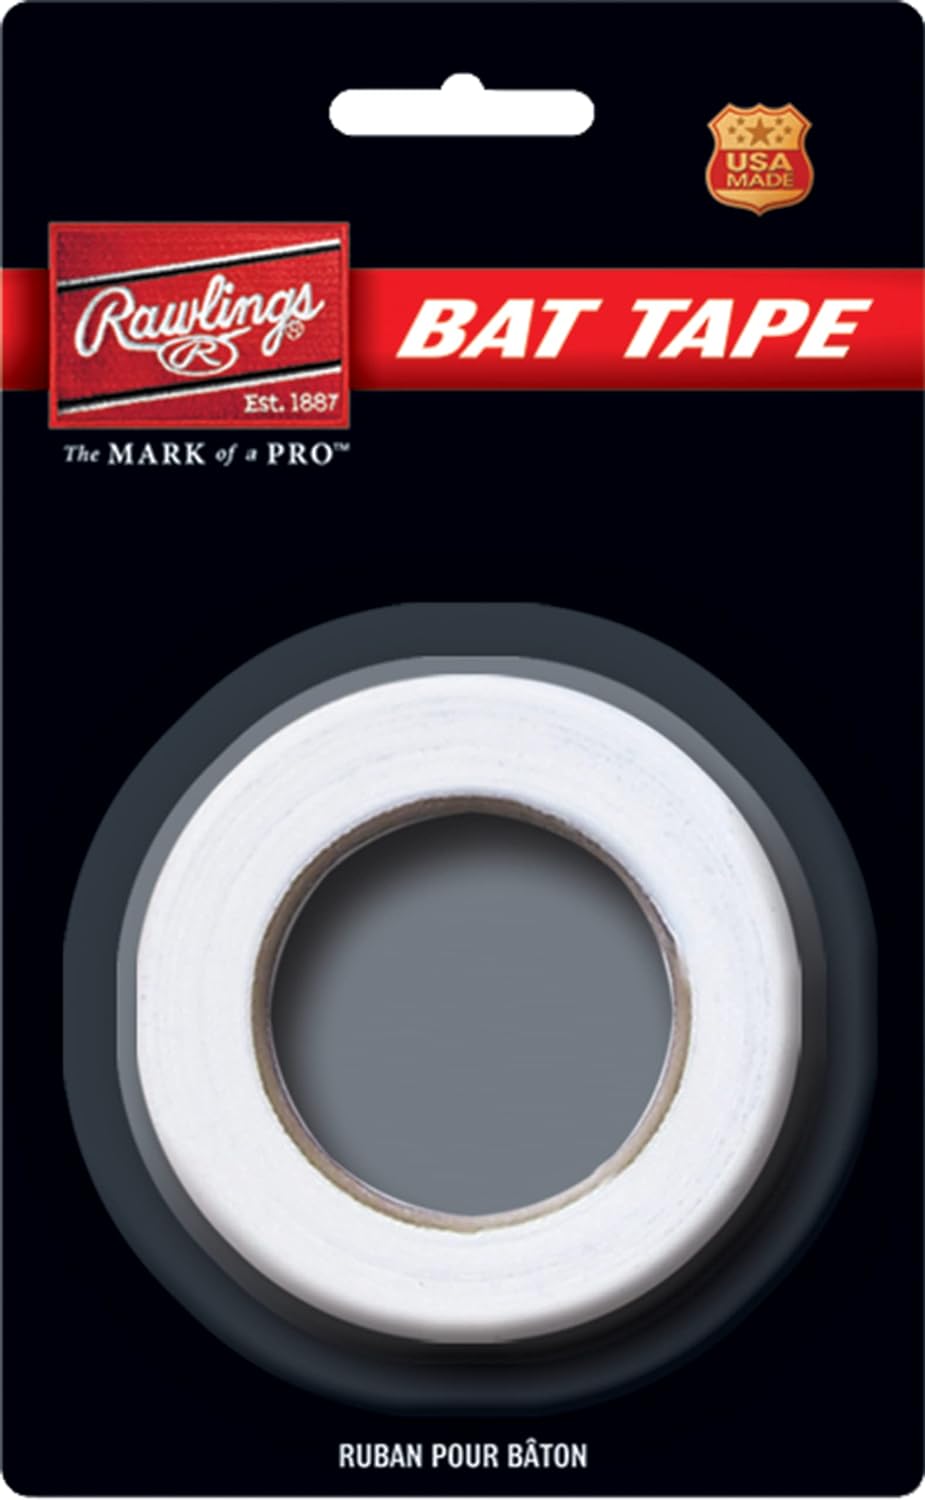 Rawlings bat tape - black